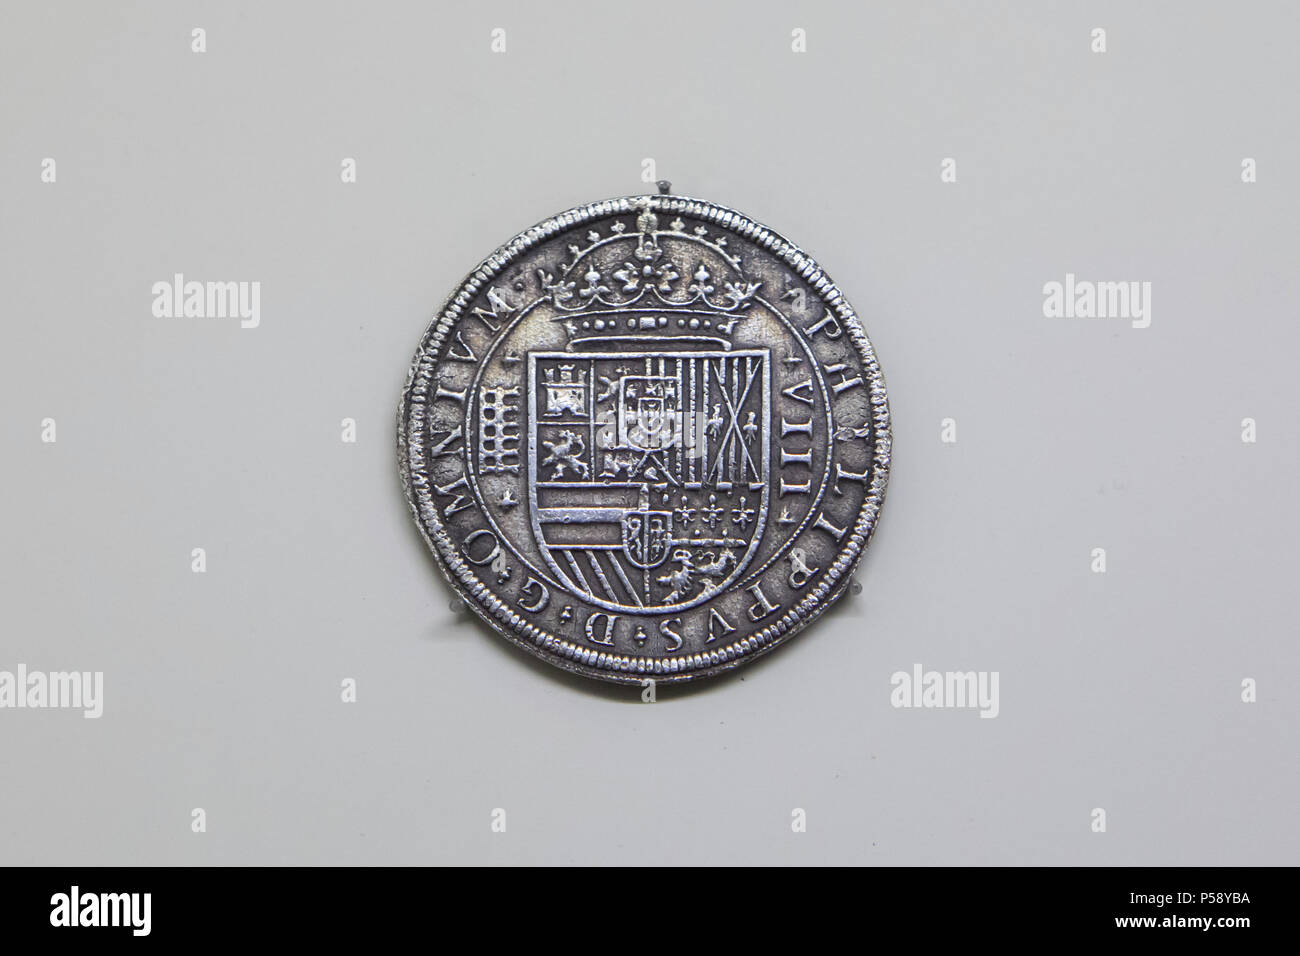 escanear Cadera látigo Dollar Español del rey Felipe II de España. Moneda de plata española,  también conocido como el Real de a ocho o la pieza de ocho acuñadas en  Segovia (1597) que se muestra